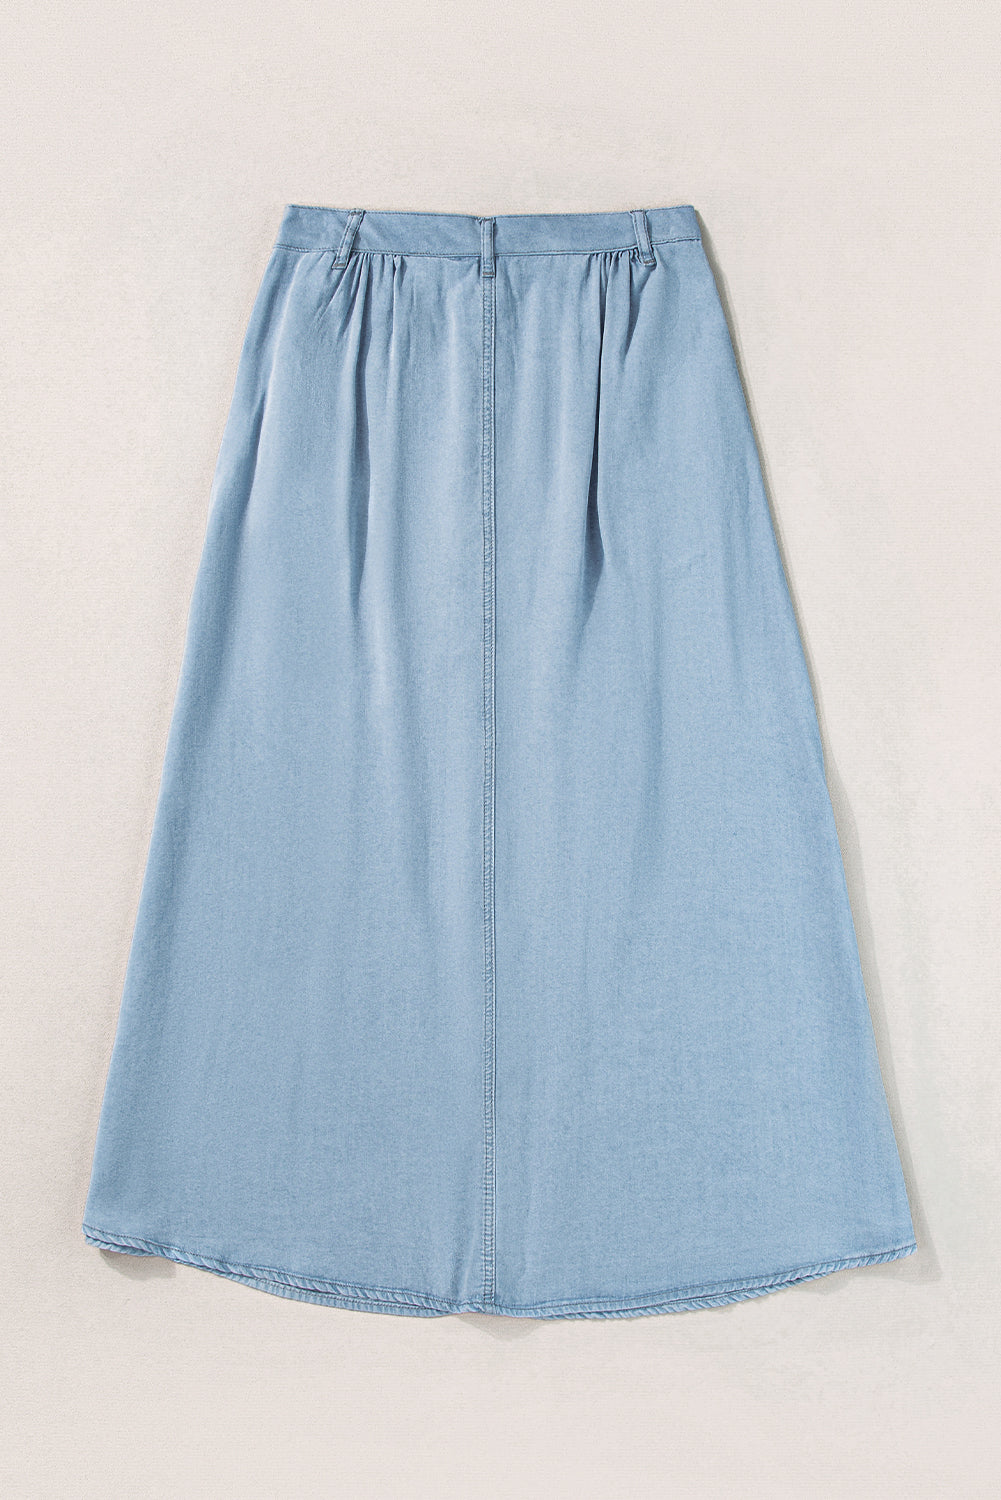 Mist Blue Fully Buttoned Long Denim Skirt